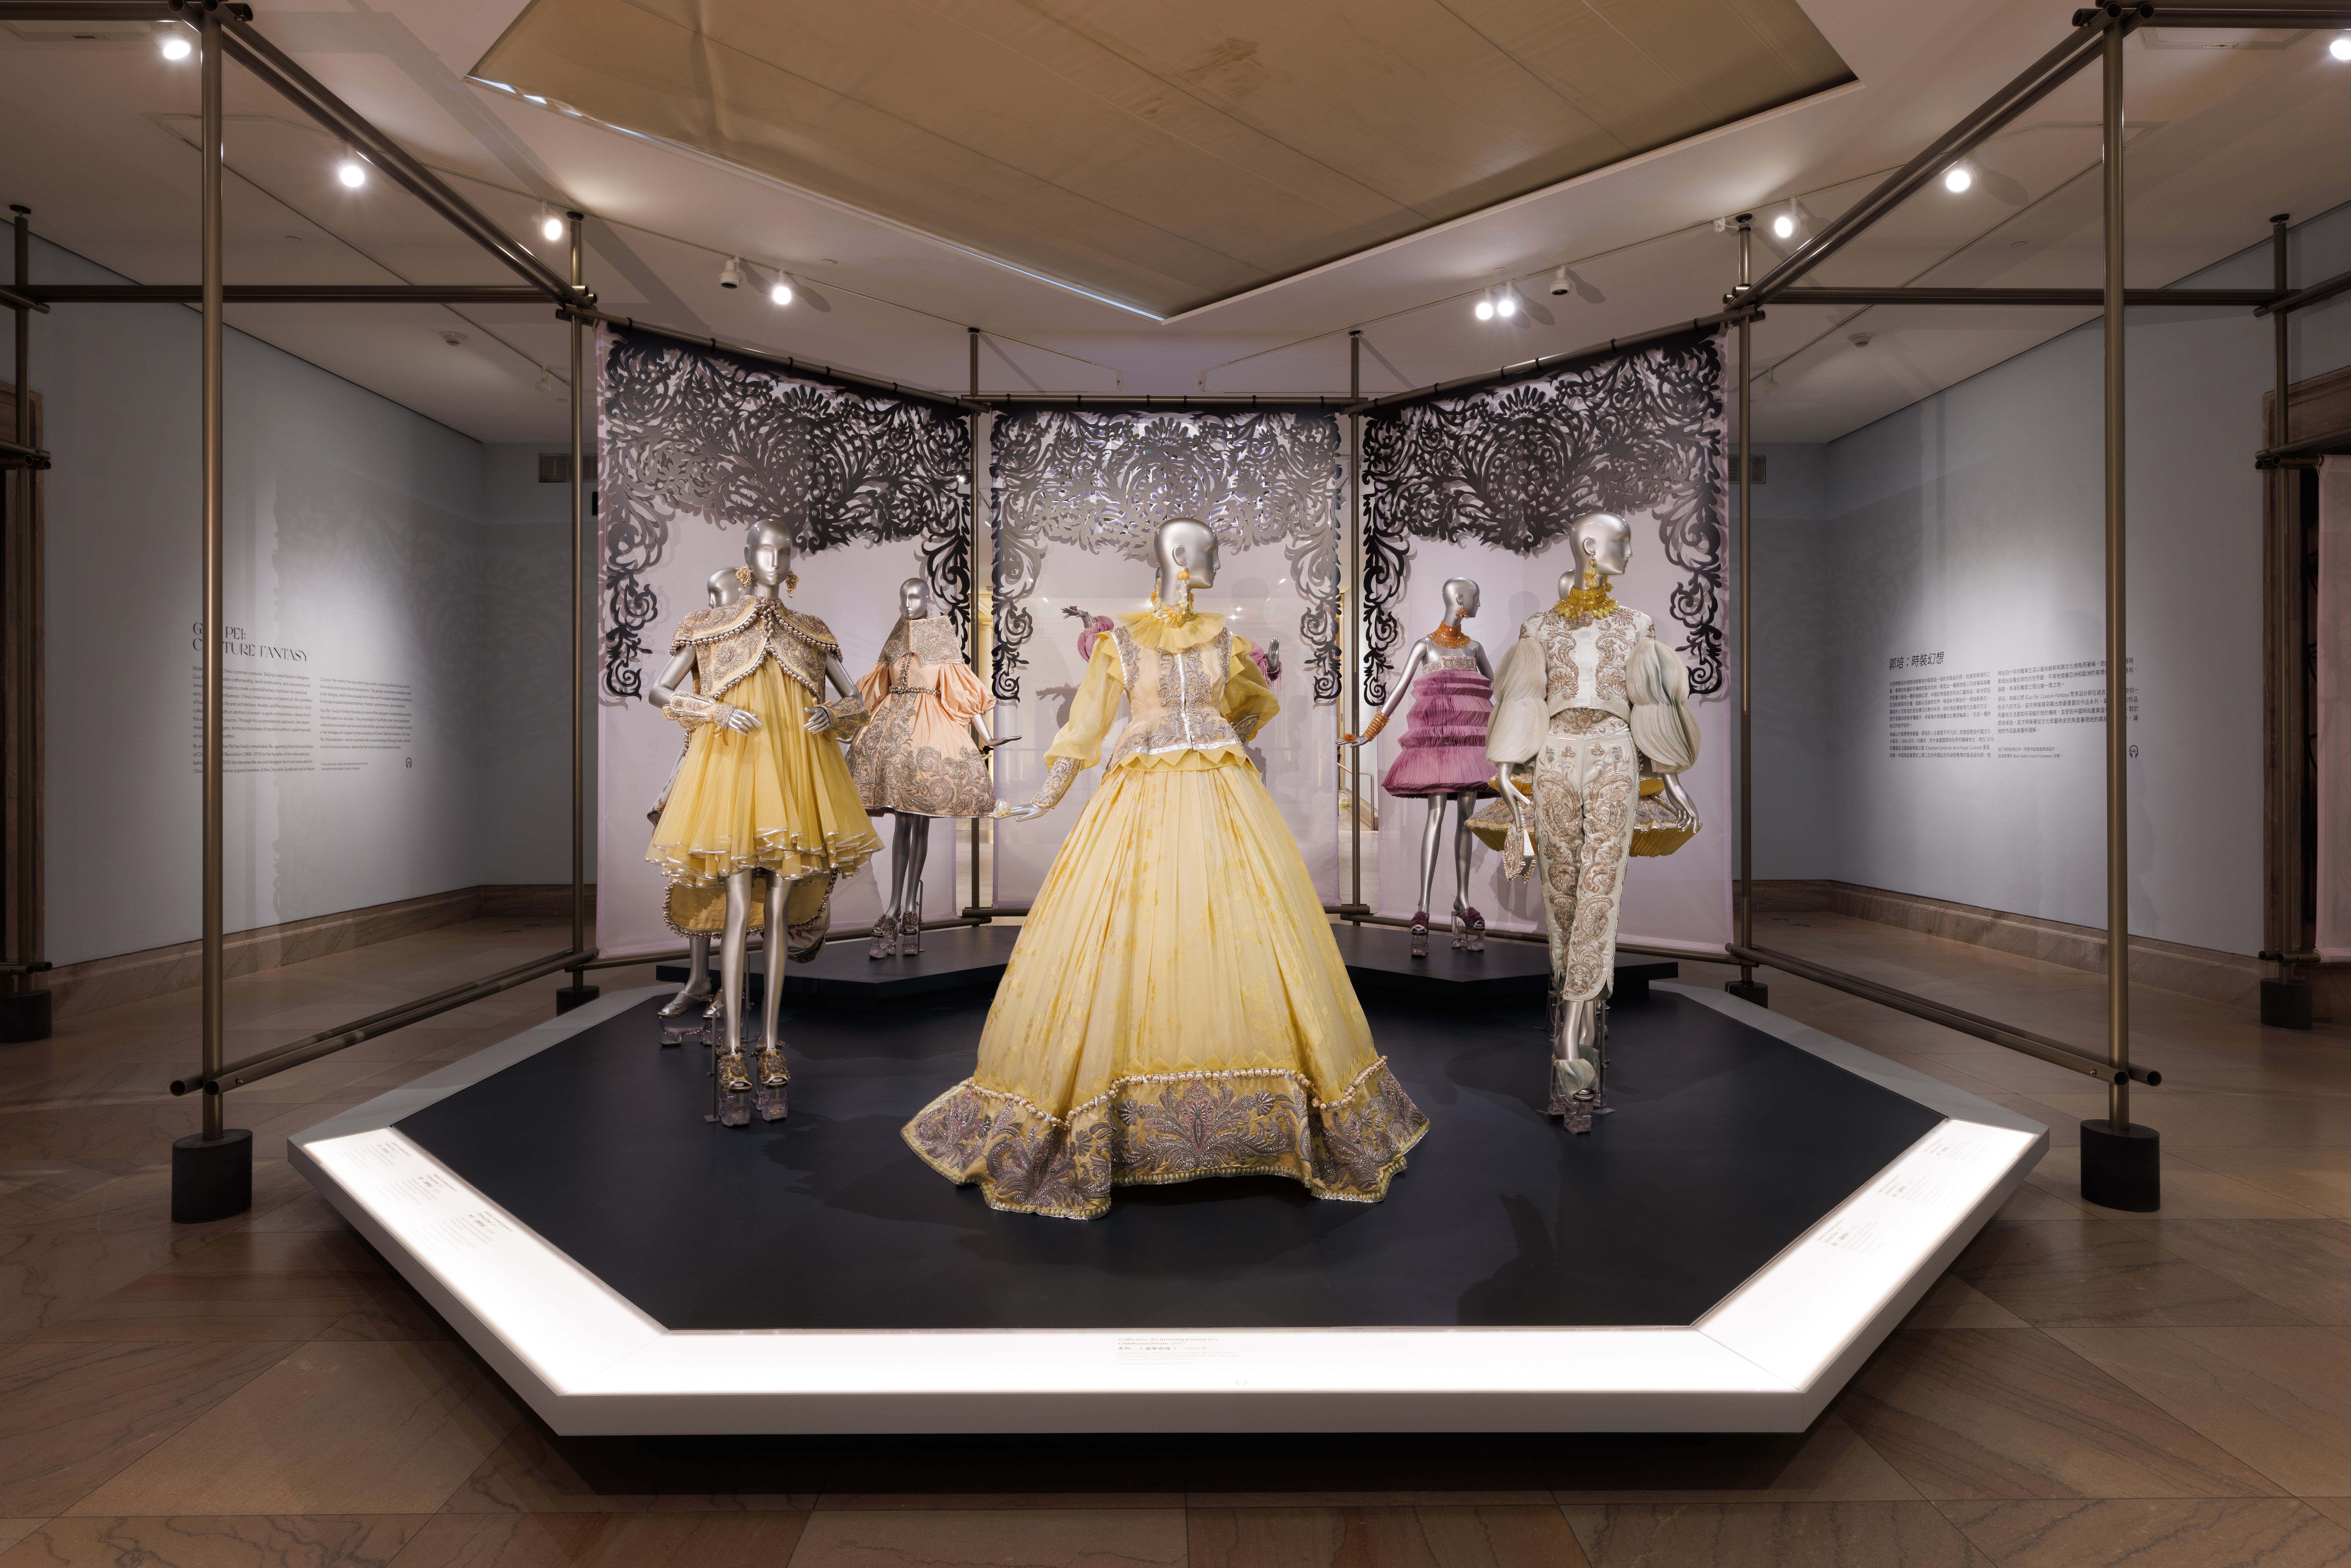 Rihanna's Met Gala Gown Designer Guo Pei Got Her Own Museum Exhibit